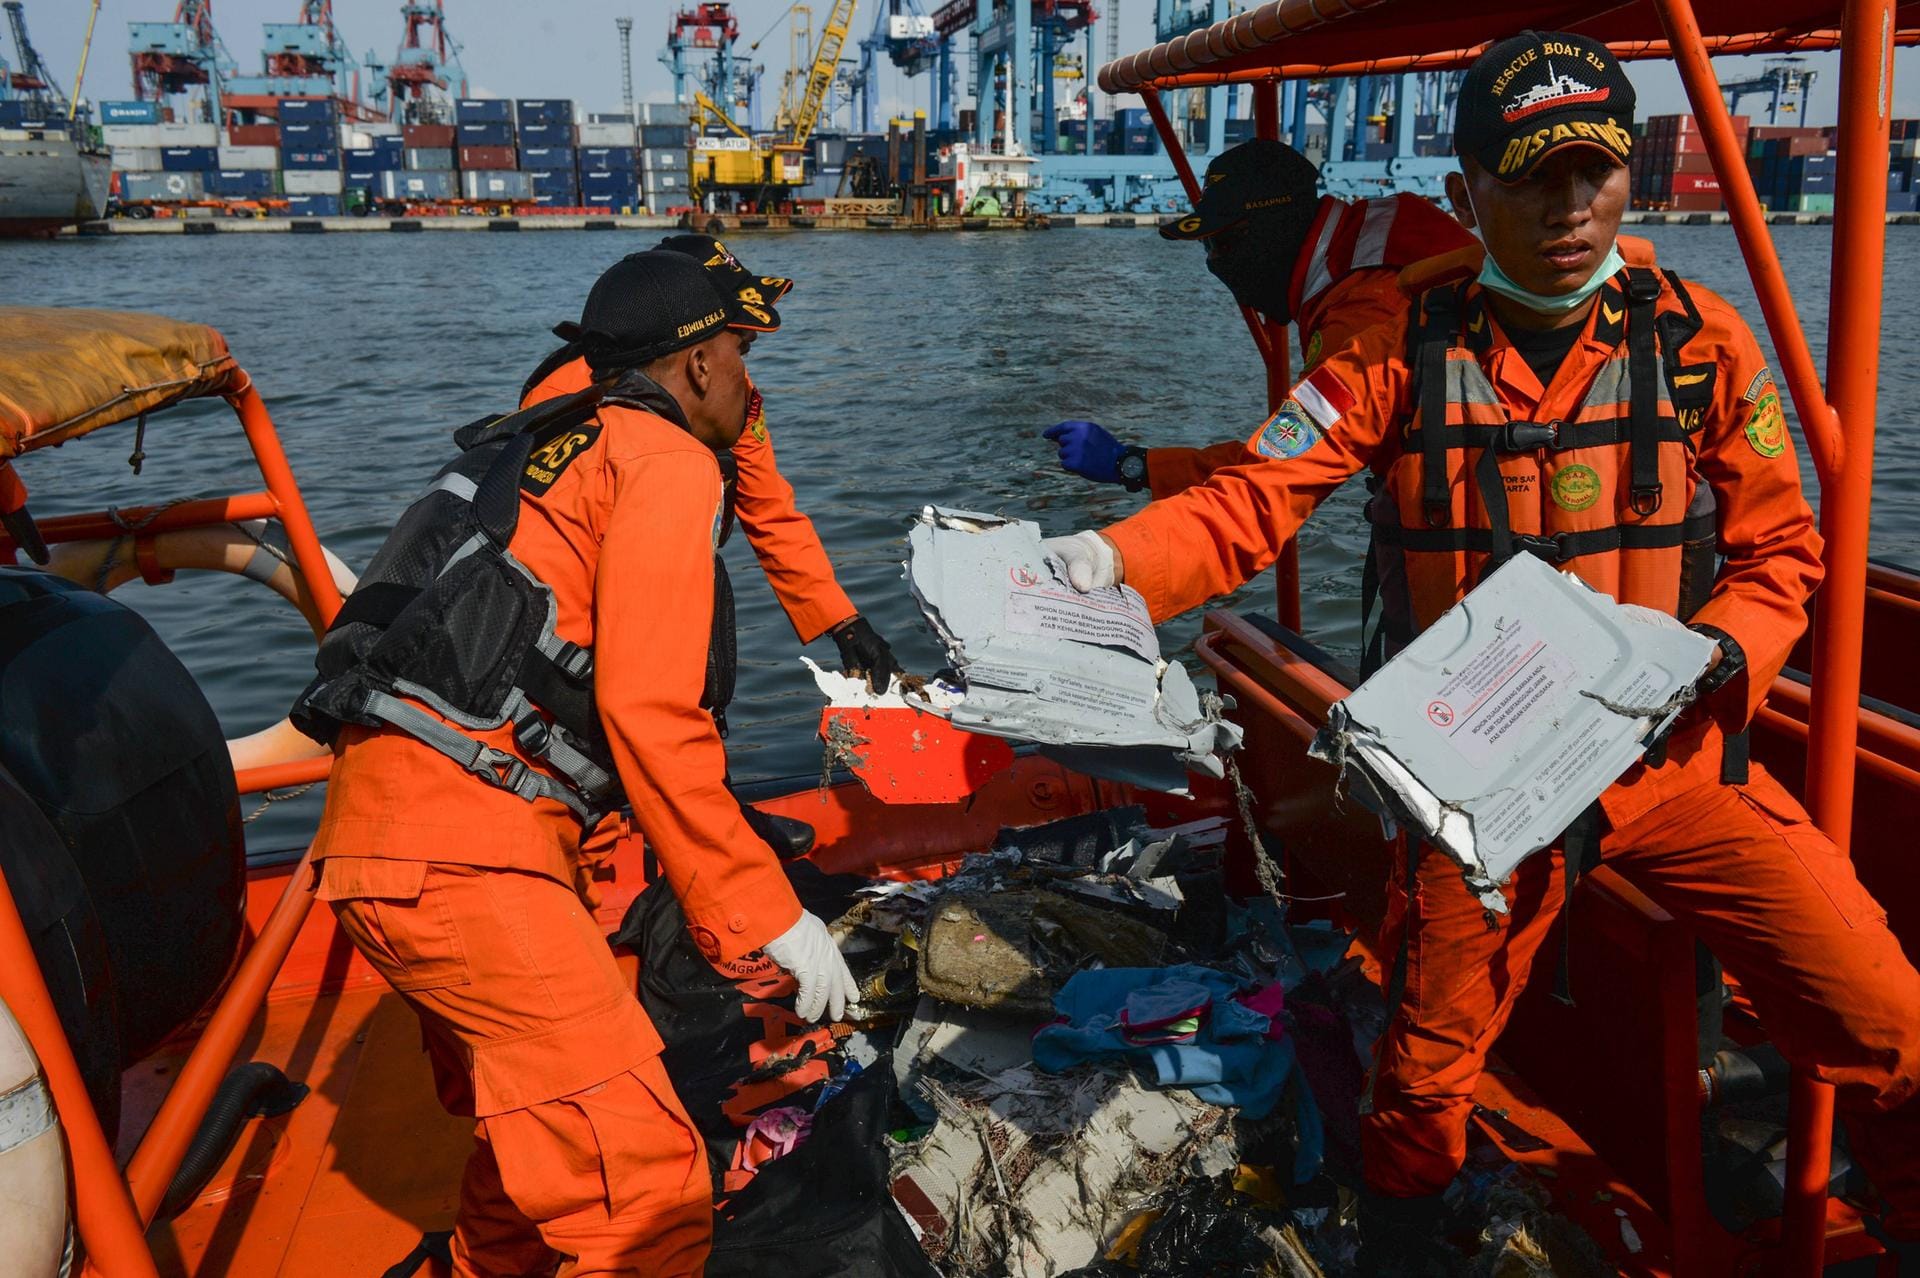 Indonesien, Oktober 2018: Kurz nach dem Start stürzt eine Boeing 737 ins Meer. Beim Absturz bei Jakarta sterben 181 Passagiere und acht Besatzungsmitglieder.